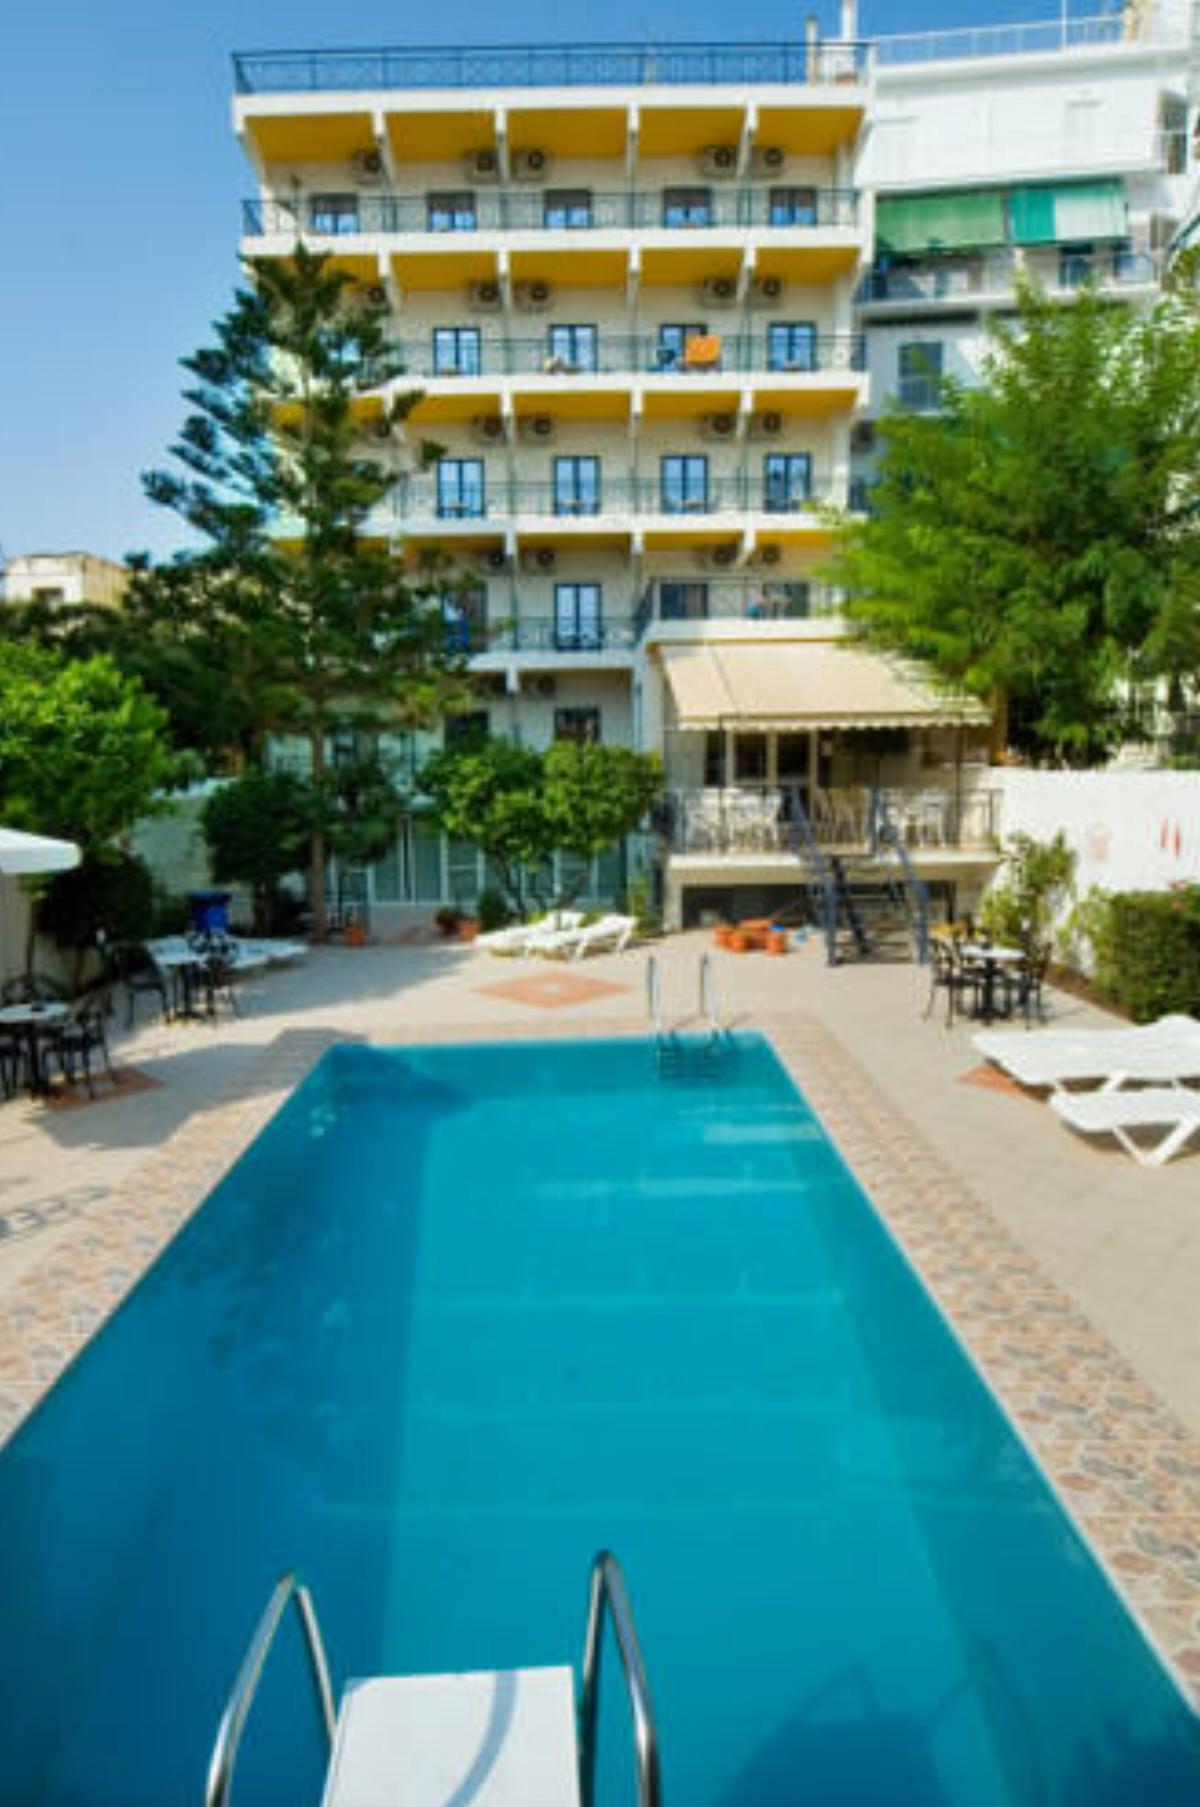 Hotel Bakos Hotel Loutraki Greece